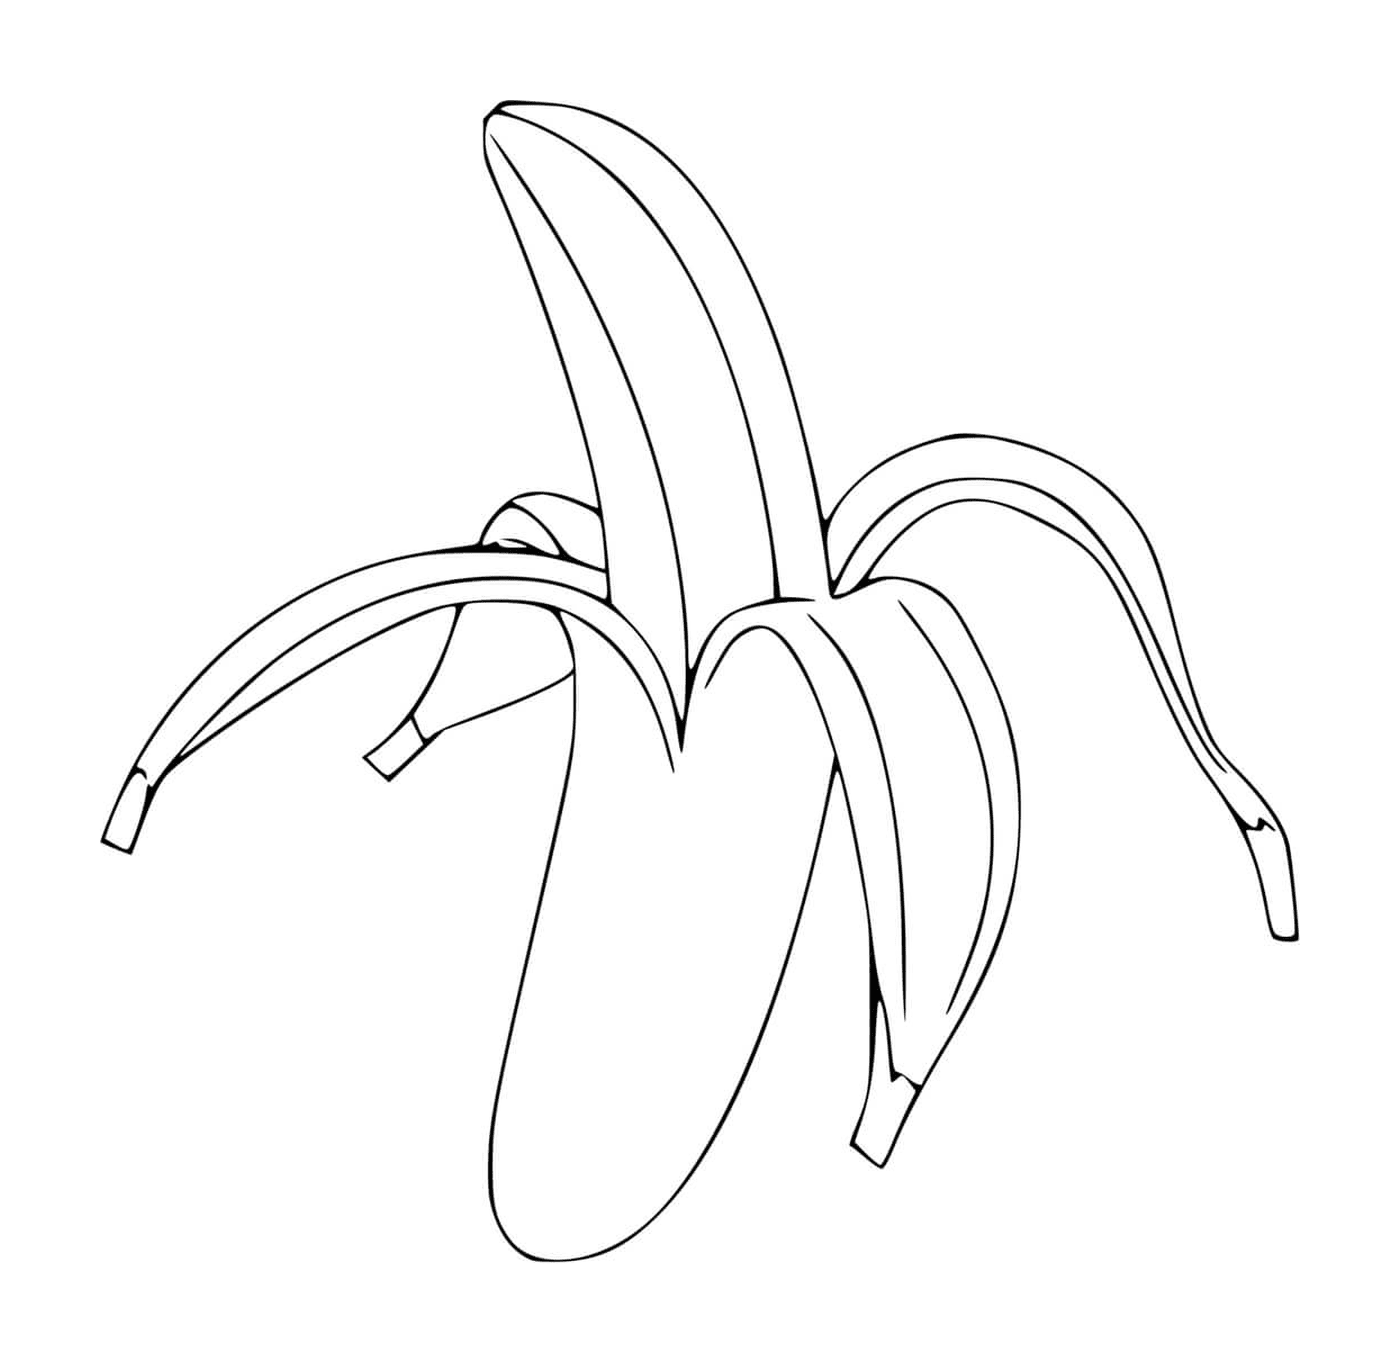  Banana descaspada 